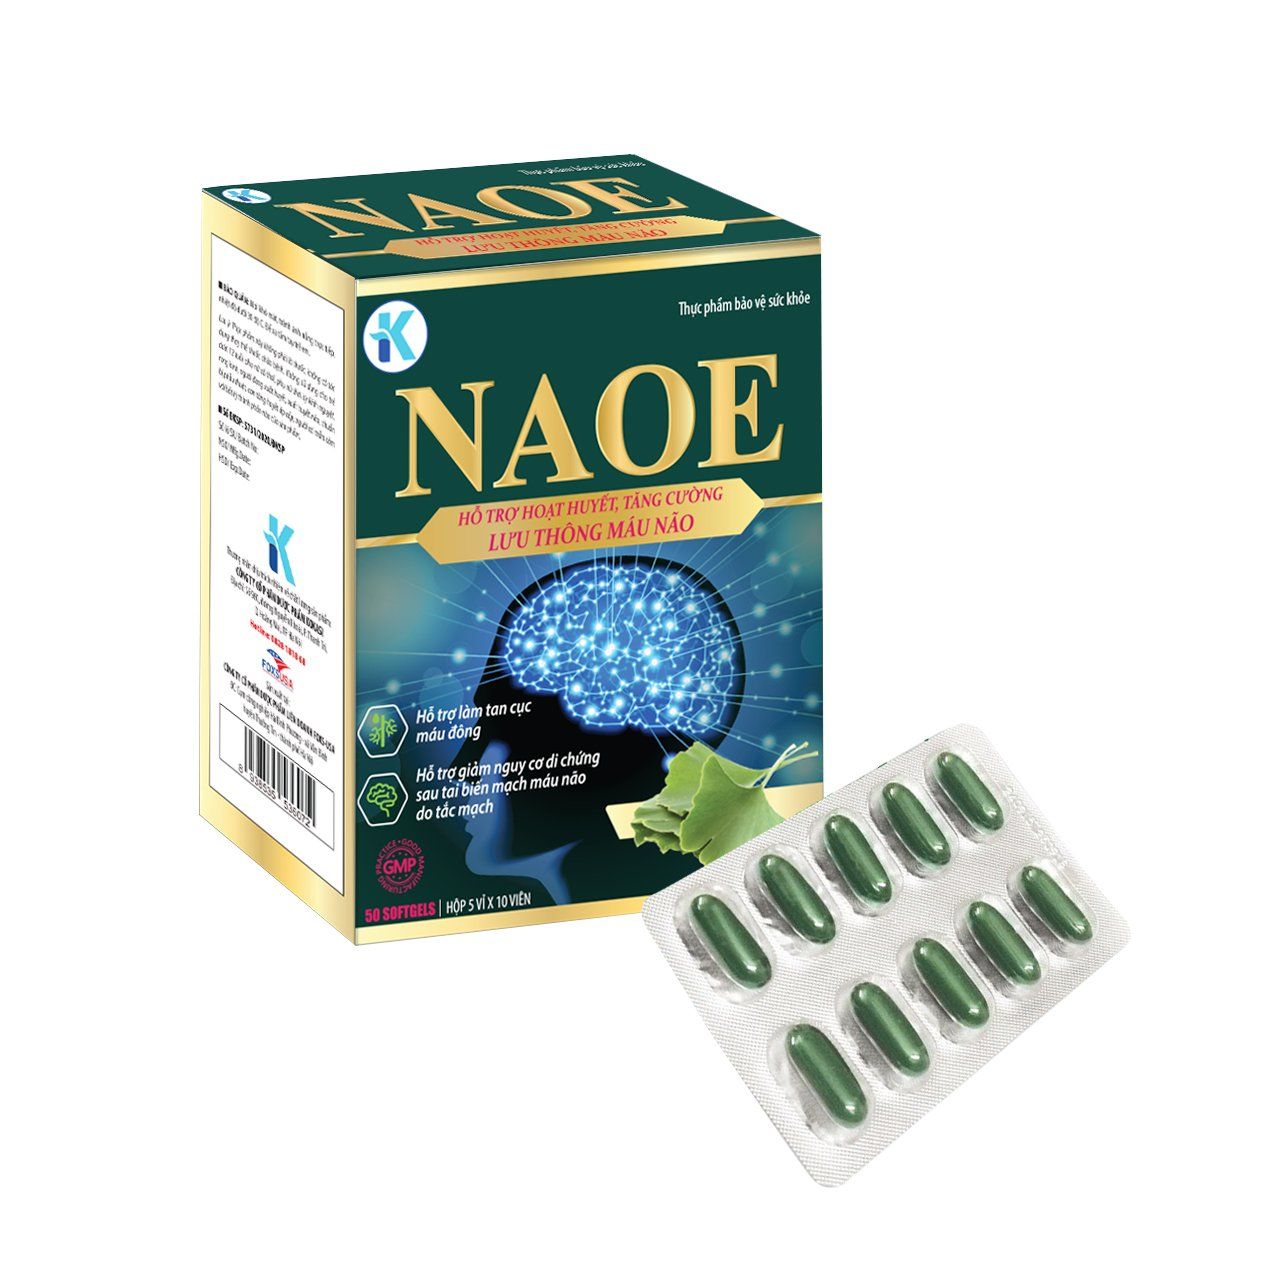 Lợi ích của việc sử dụng bổ não naoe là gì?
